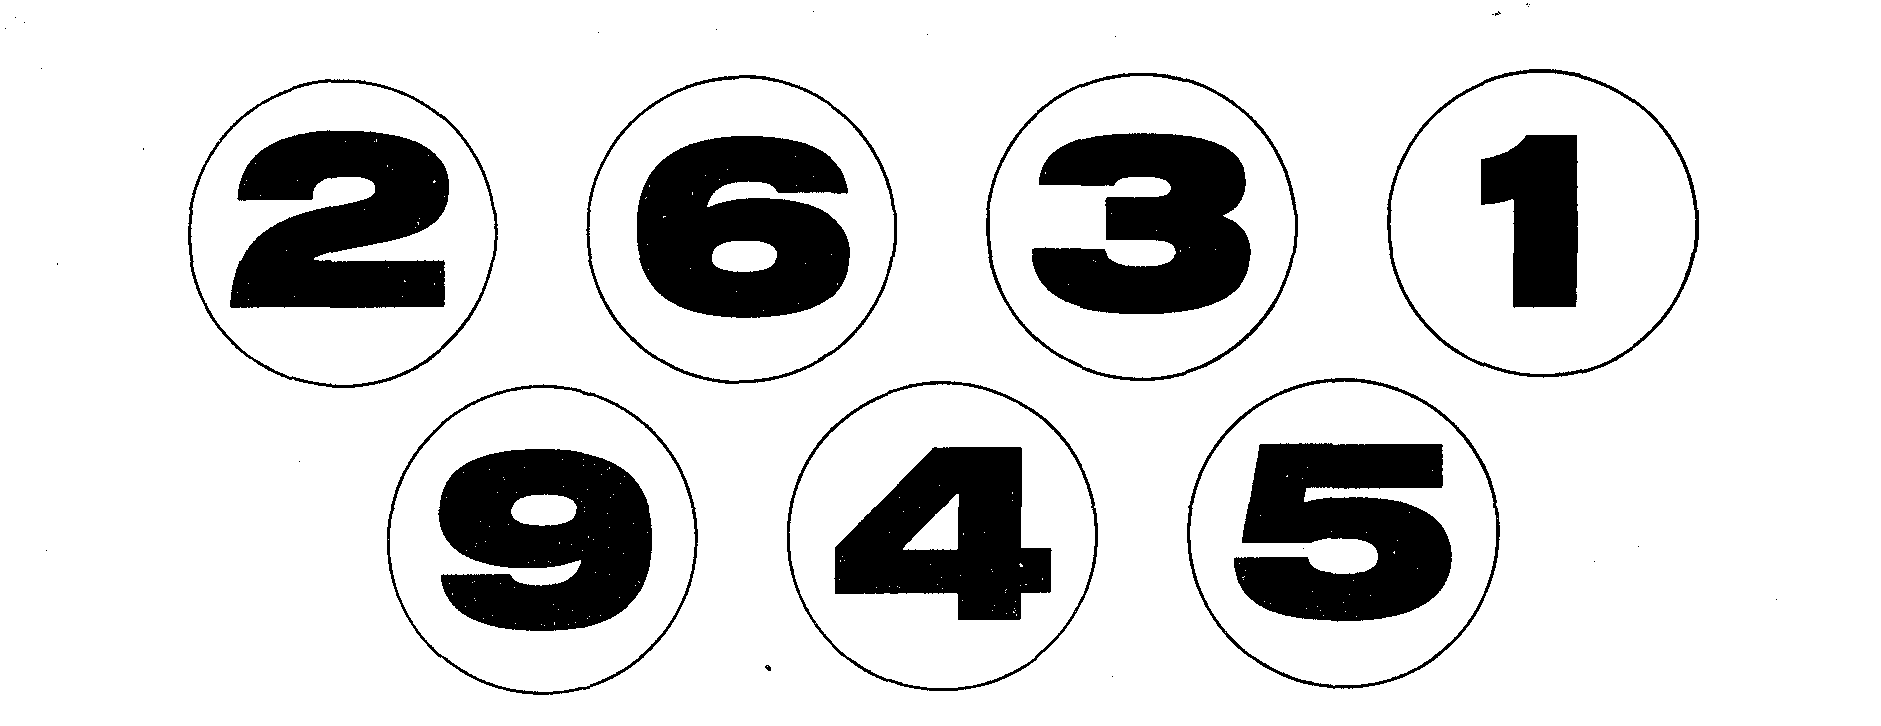 номера на стульчики в детском саду шаблоны 1 и 2